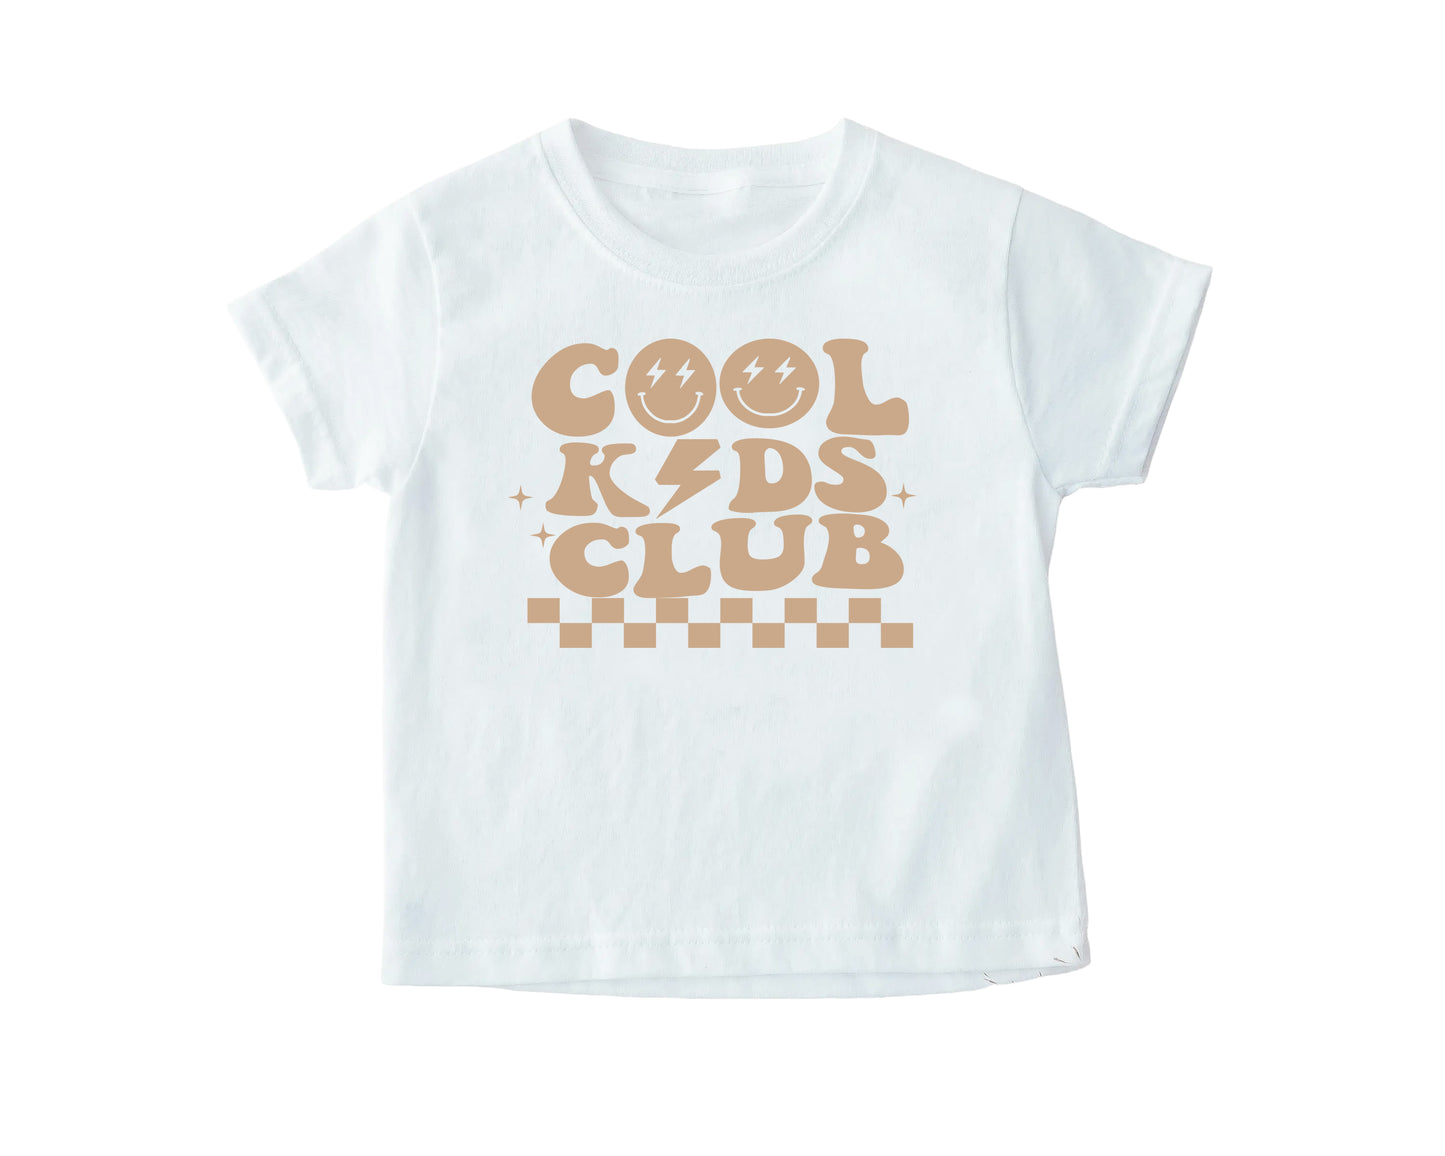 Cool Kids Club T-Shirt, Retro T-Shirt